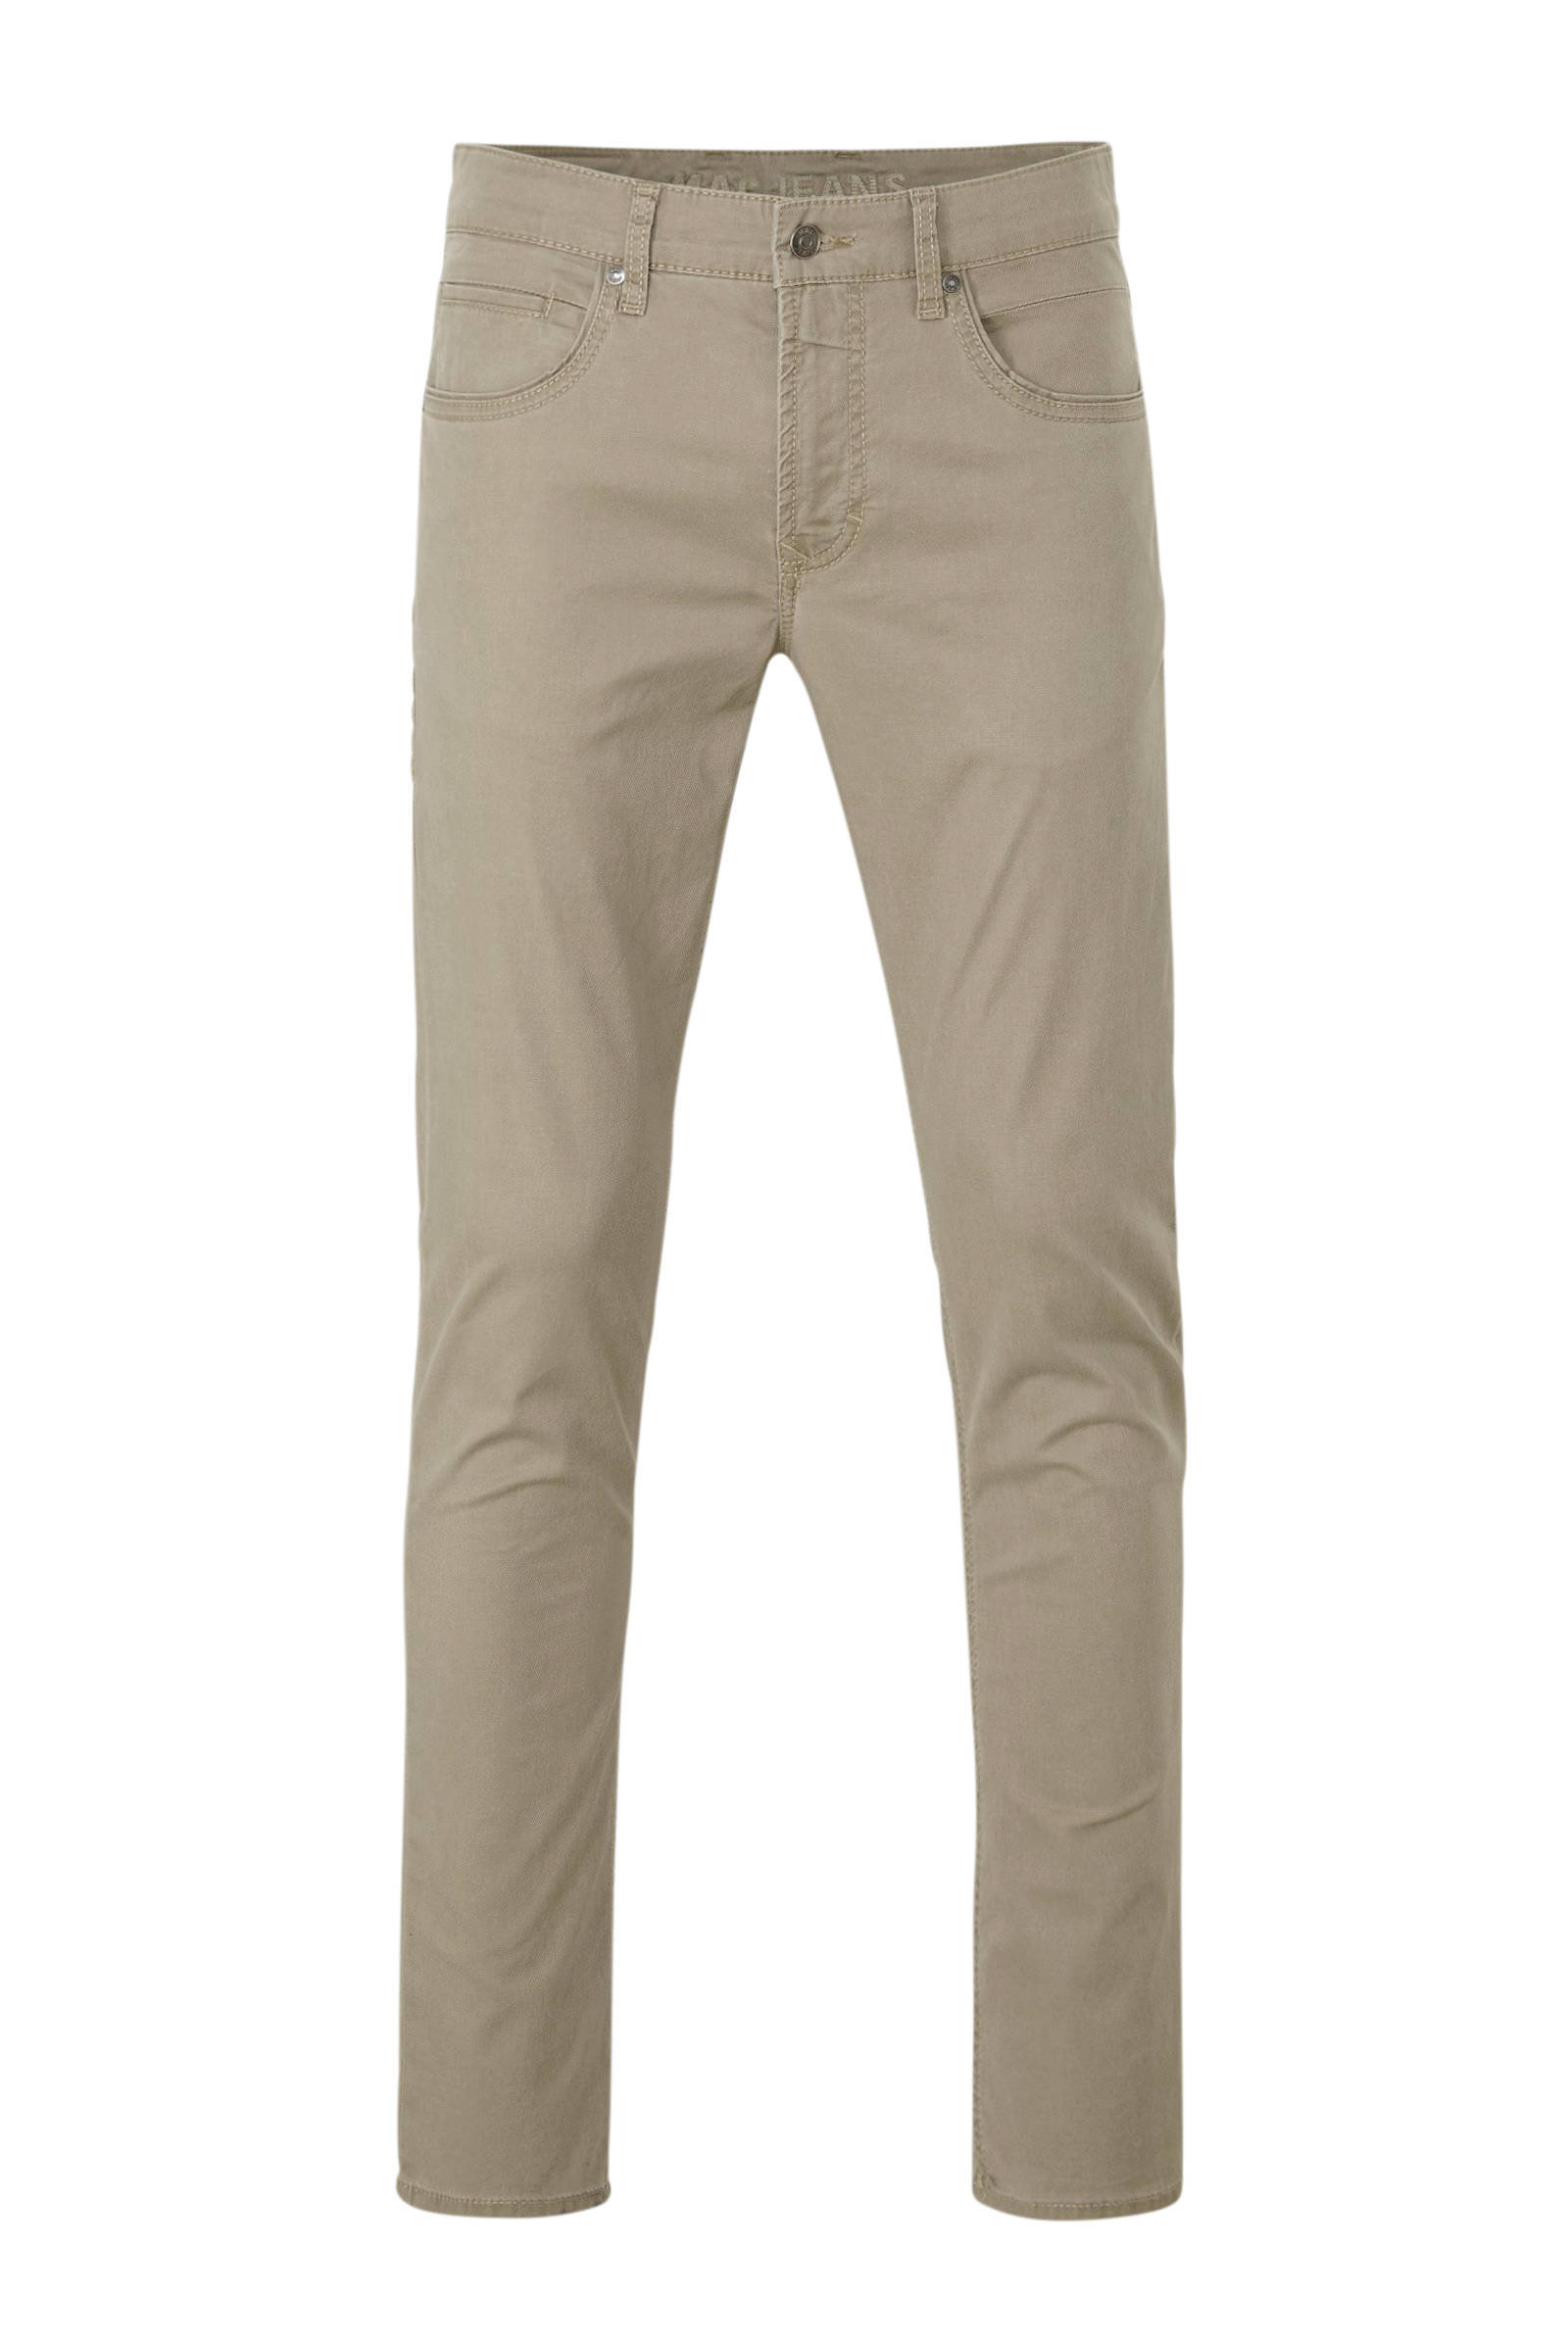 Mac pantalon 5-pocket Arne Pipe beige modern fit 35/34 online kopen